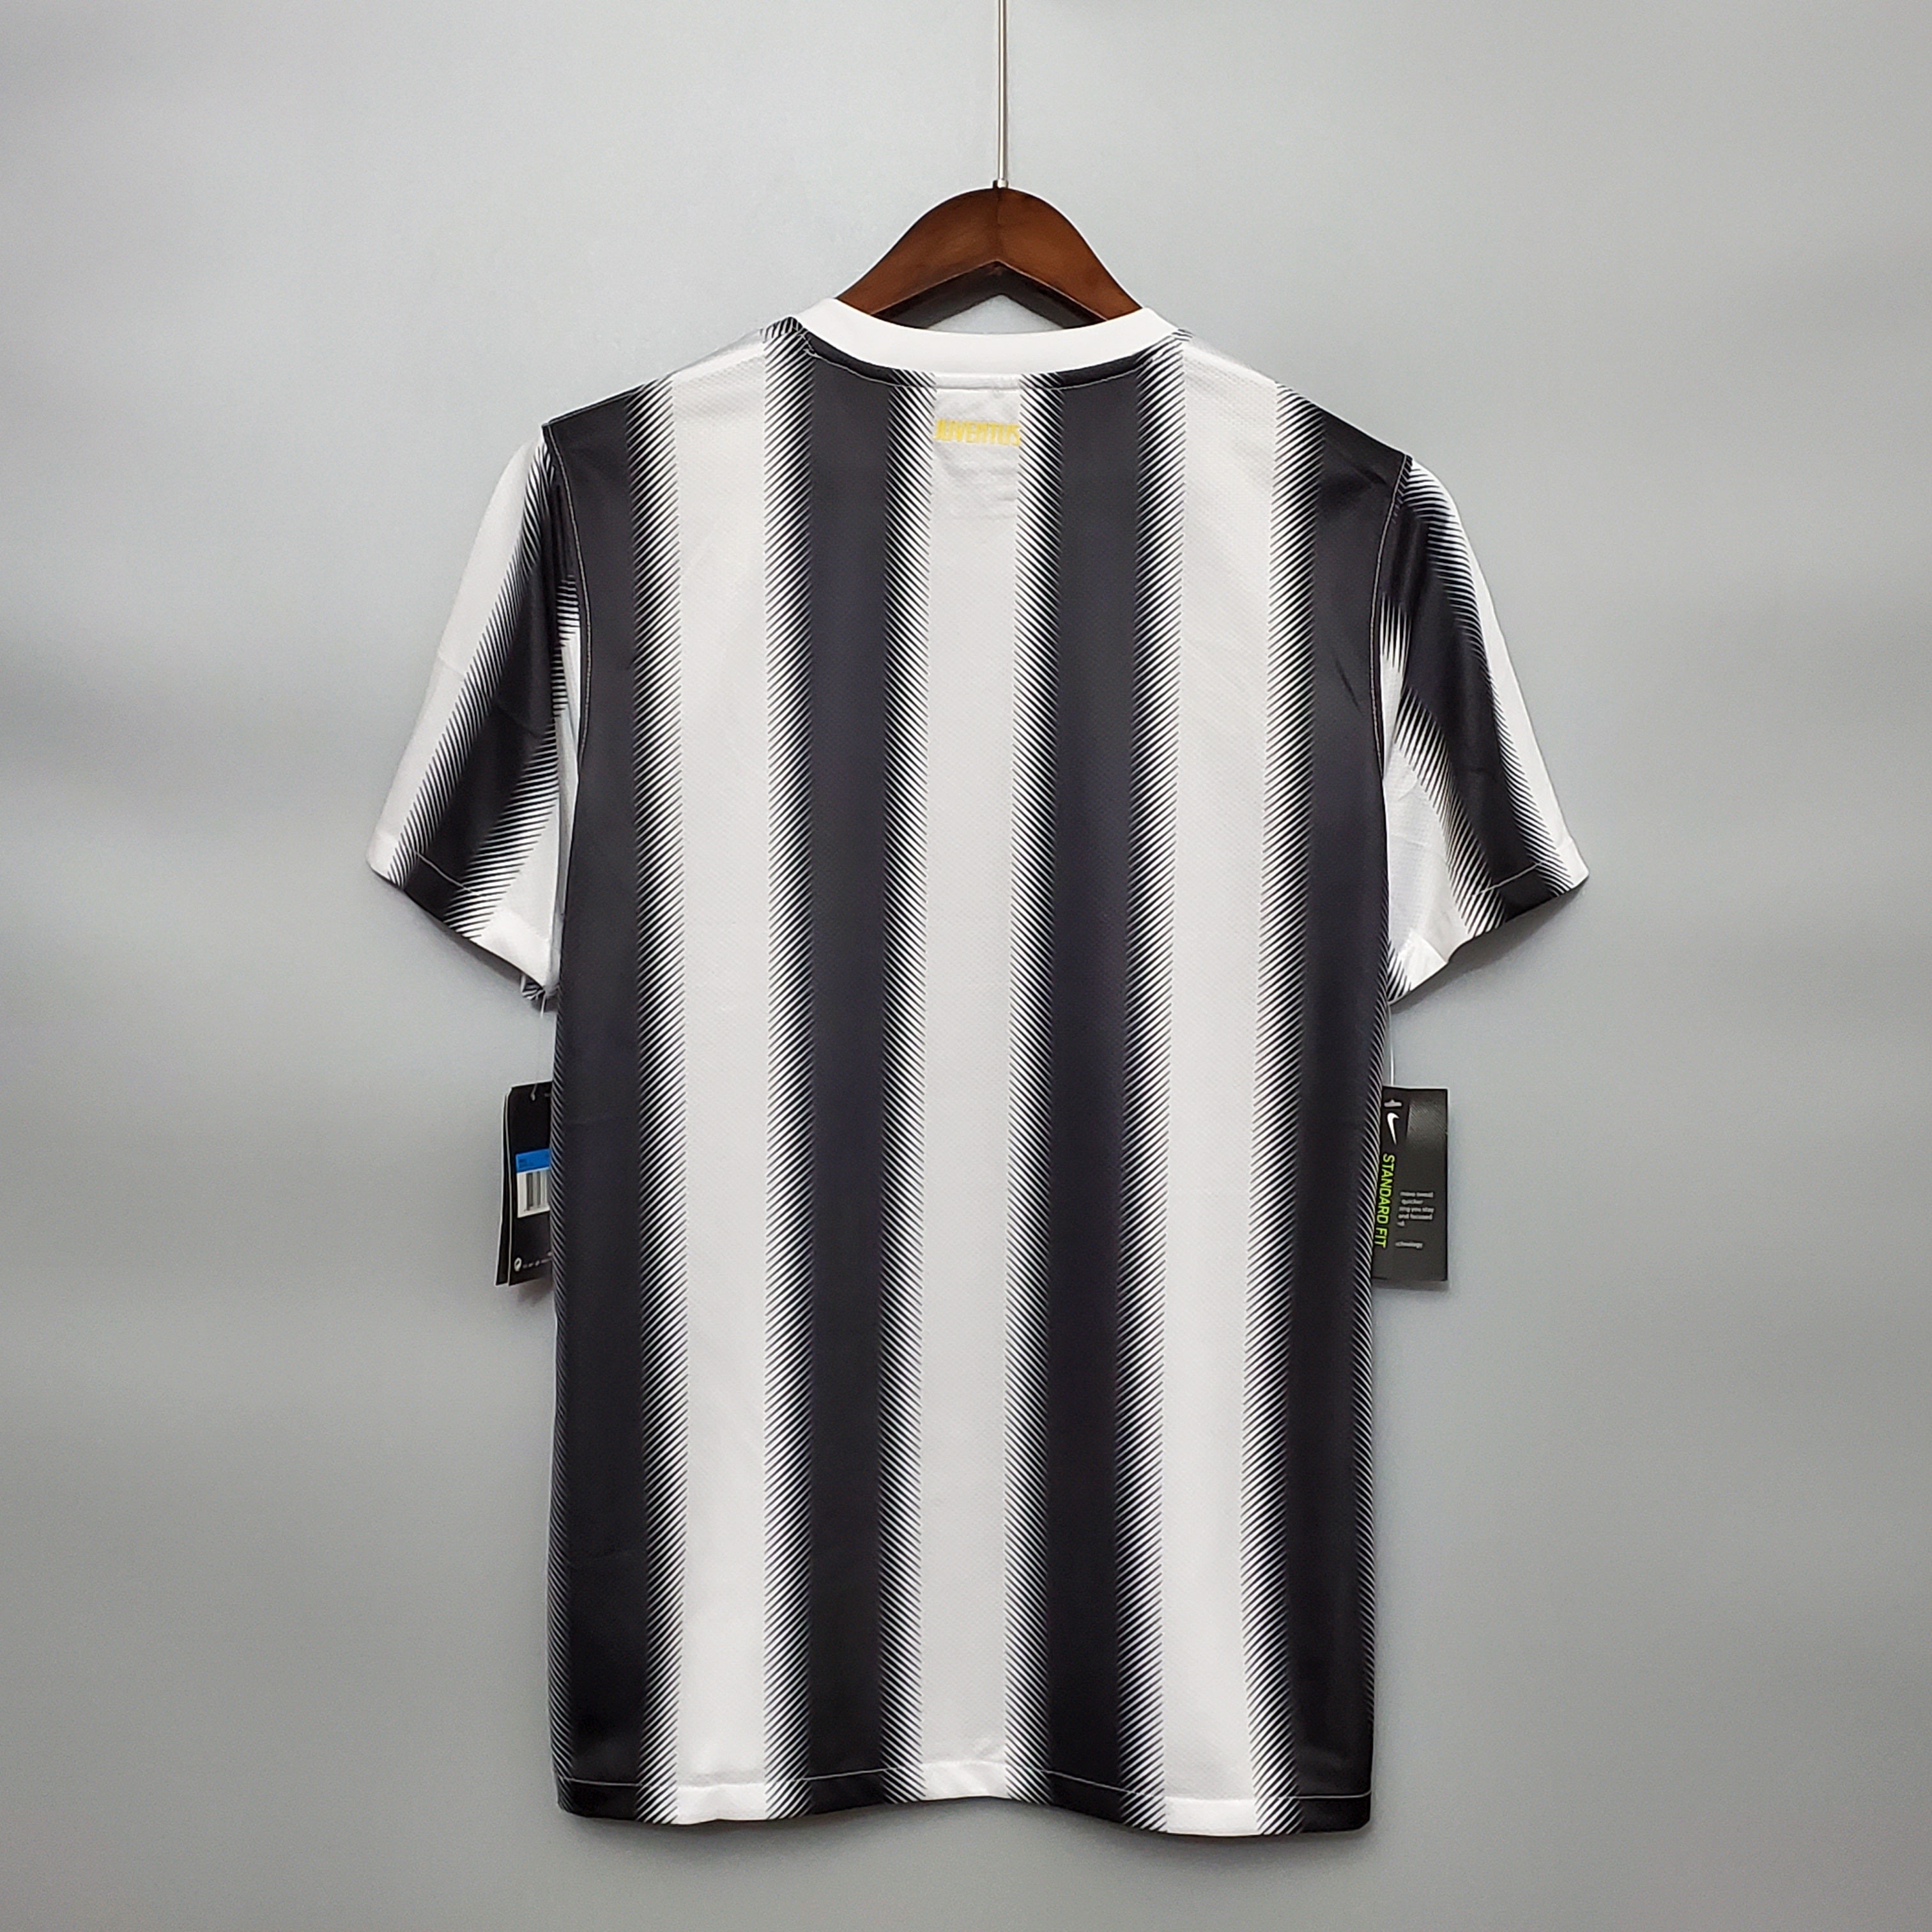 Juventus 2011-12 Home Jersey